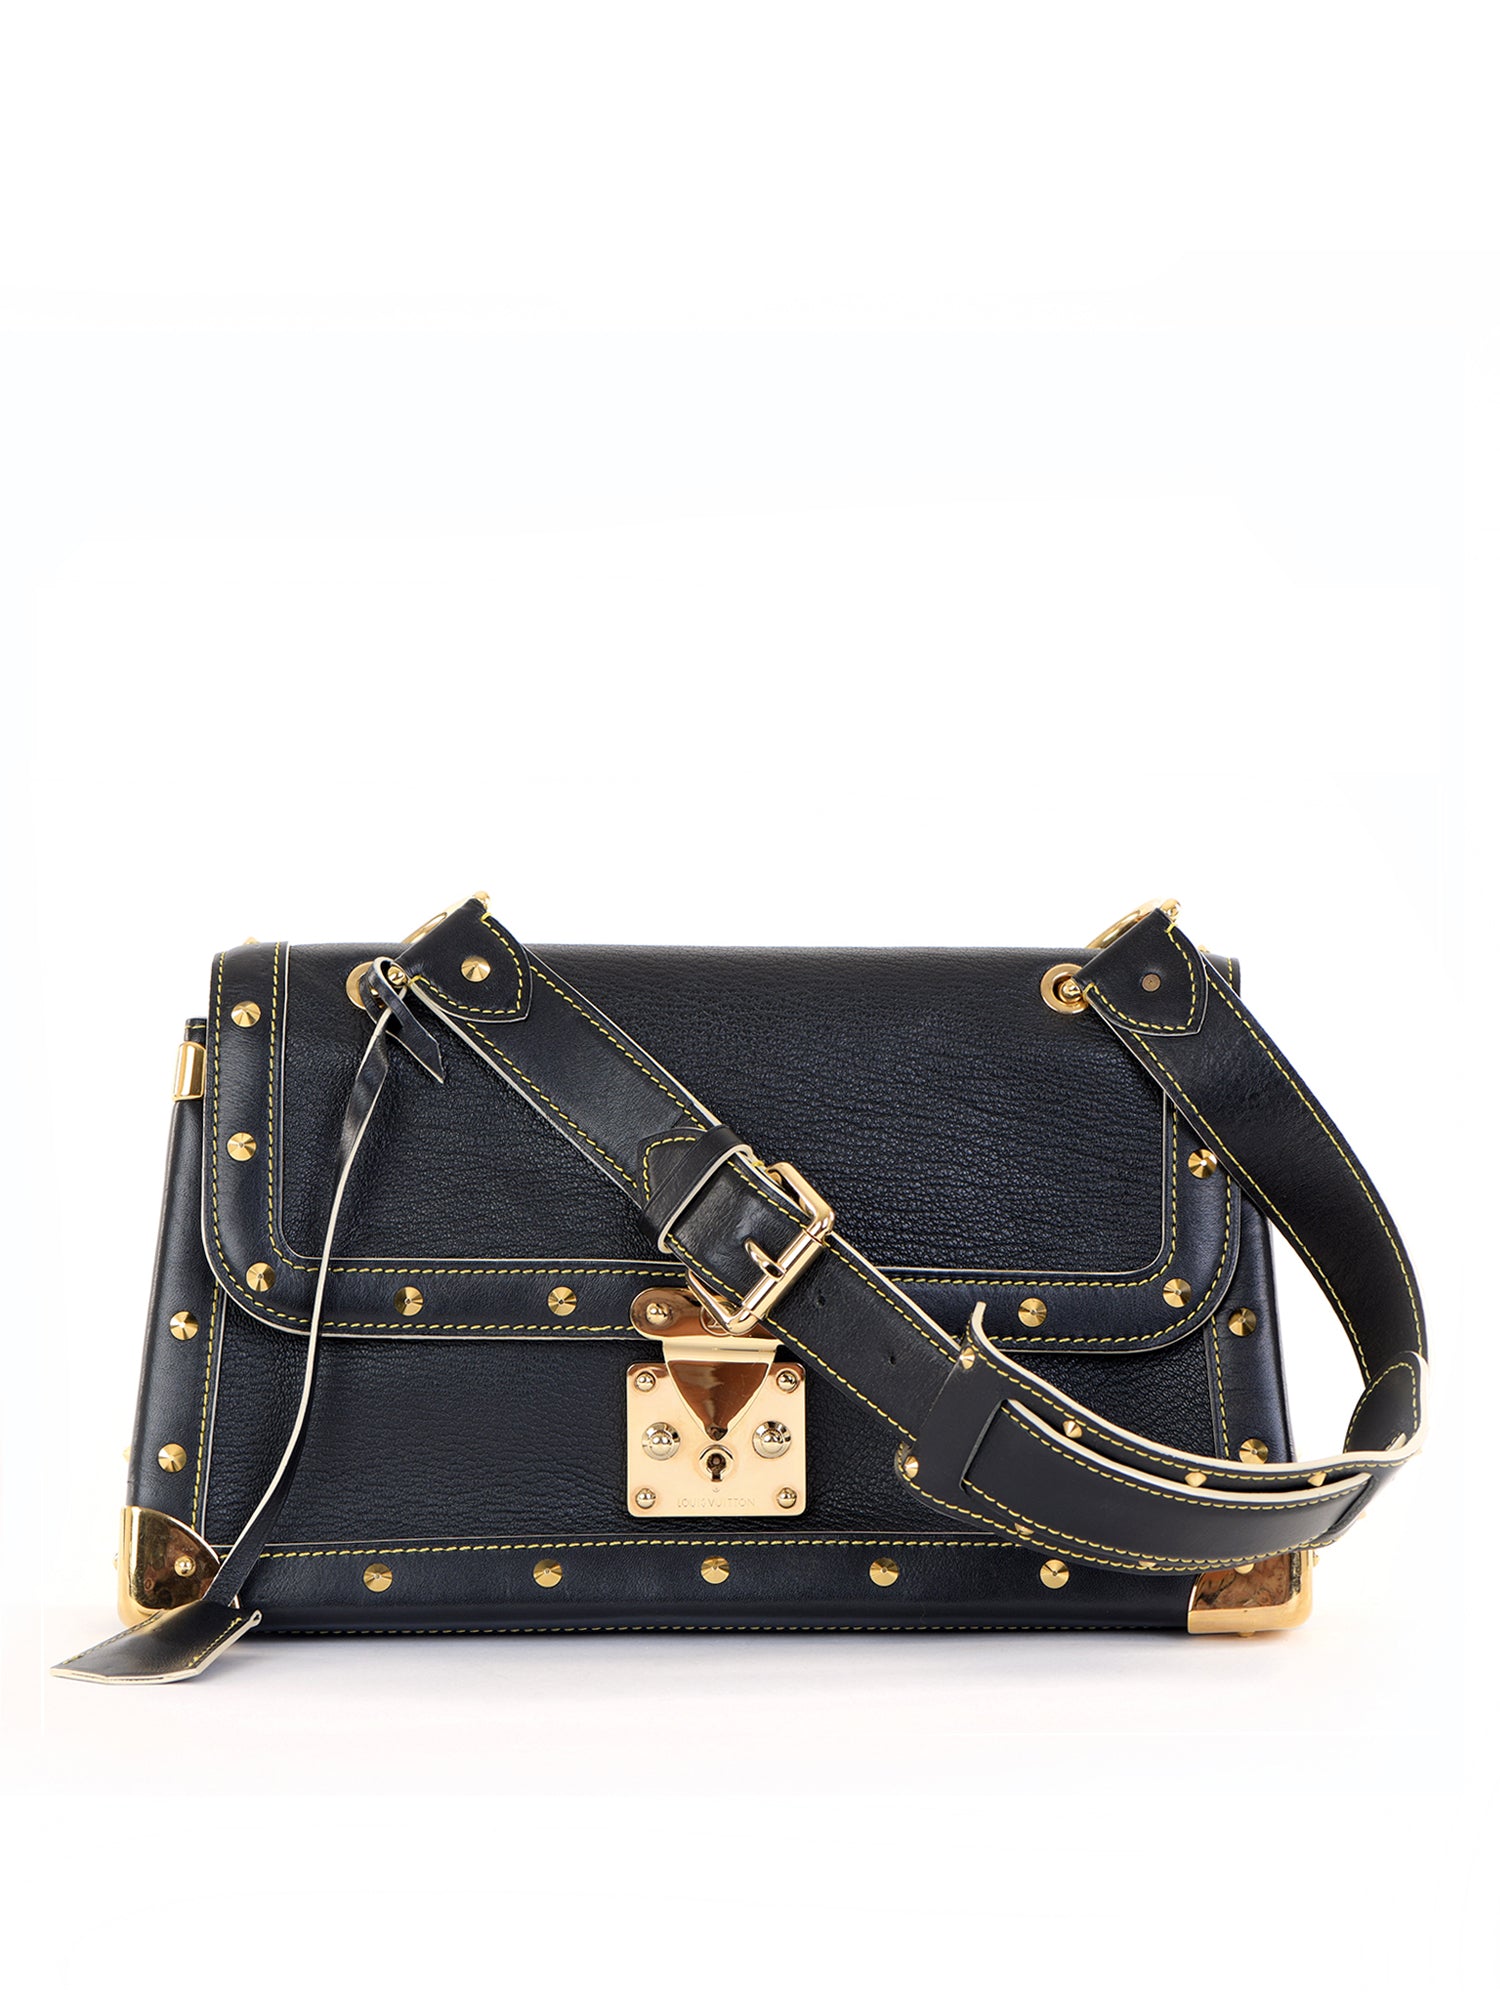 Louis Vuitton, Bags, Louis Vuitton Suhali Black Le Talentueux Bag Gold